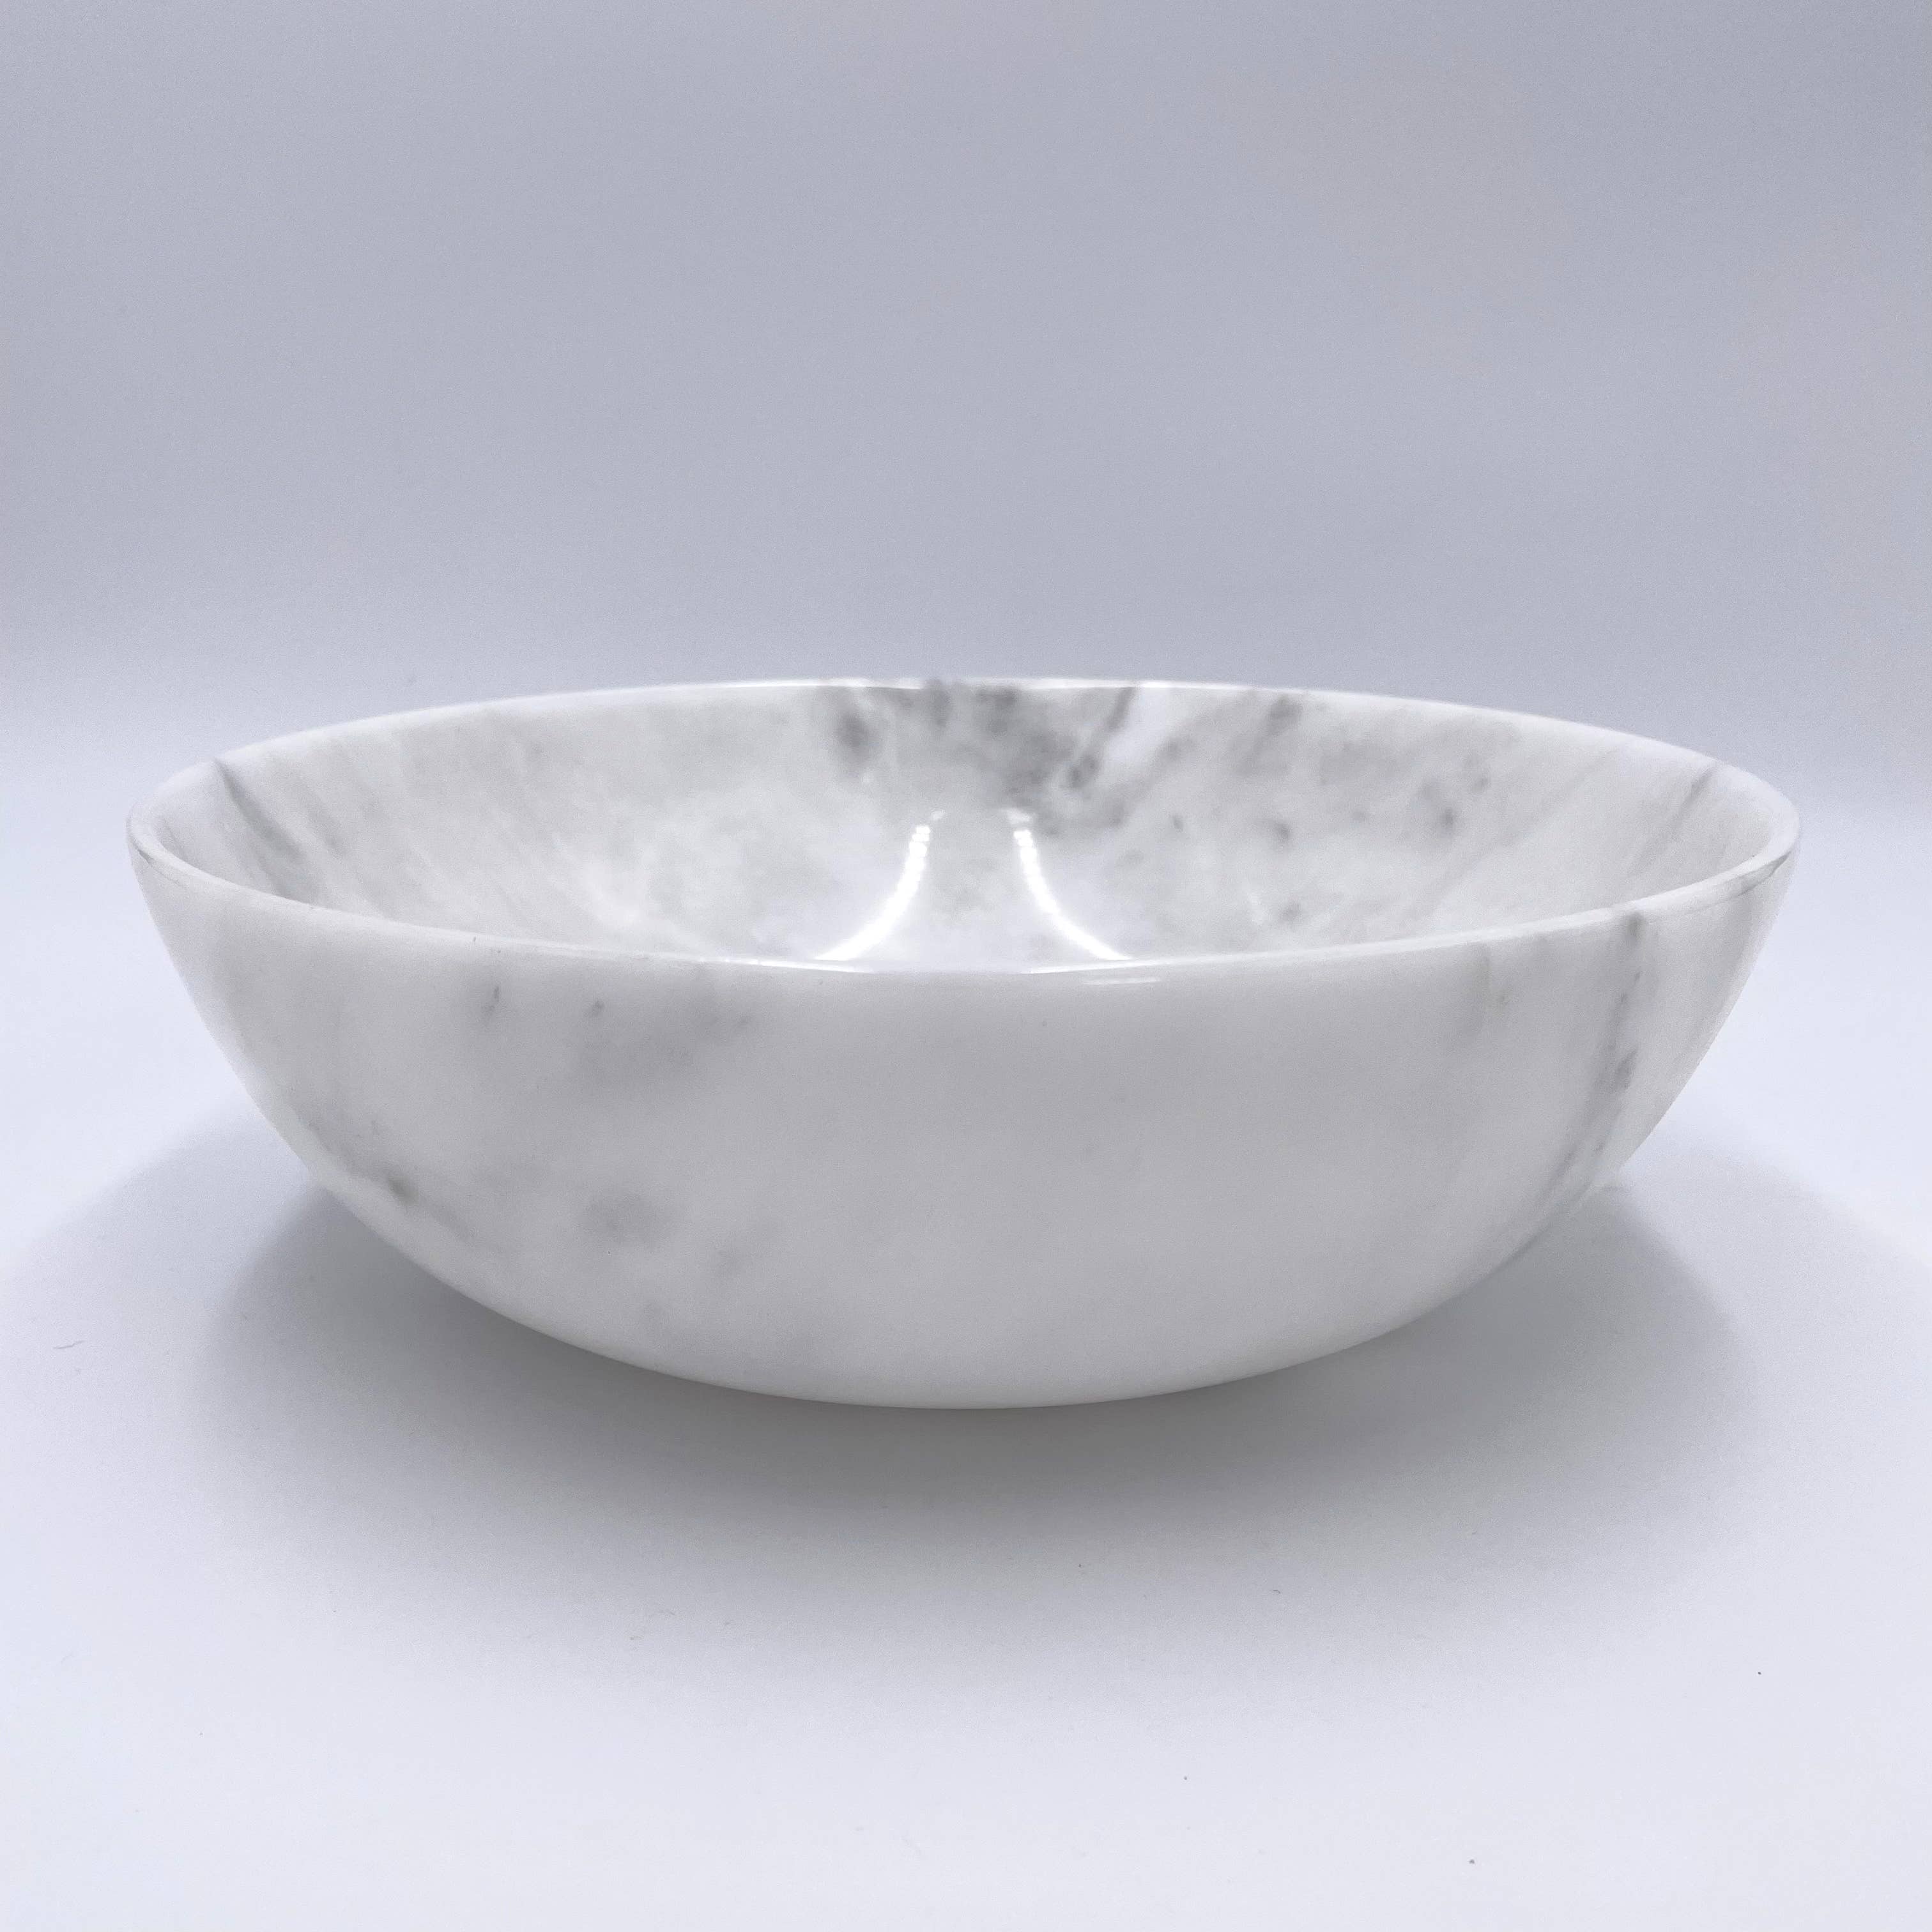 Zairat White Marble Bowl - 10"